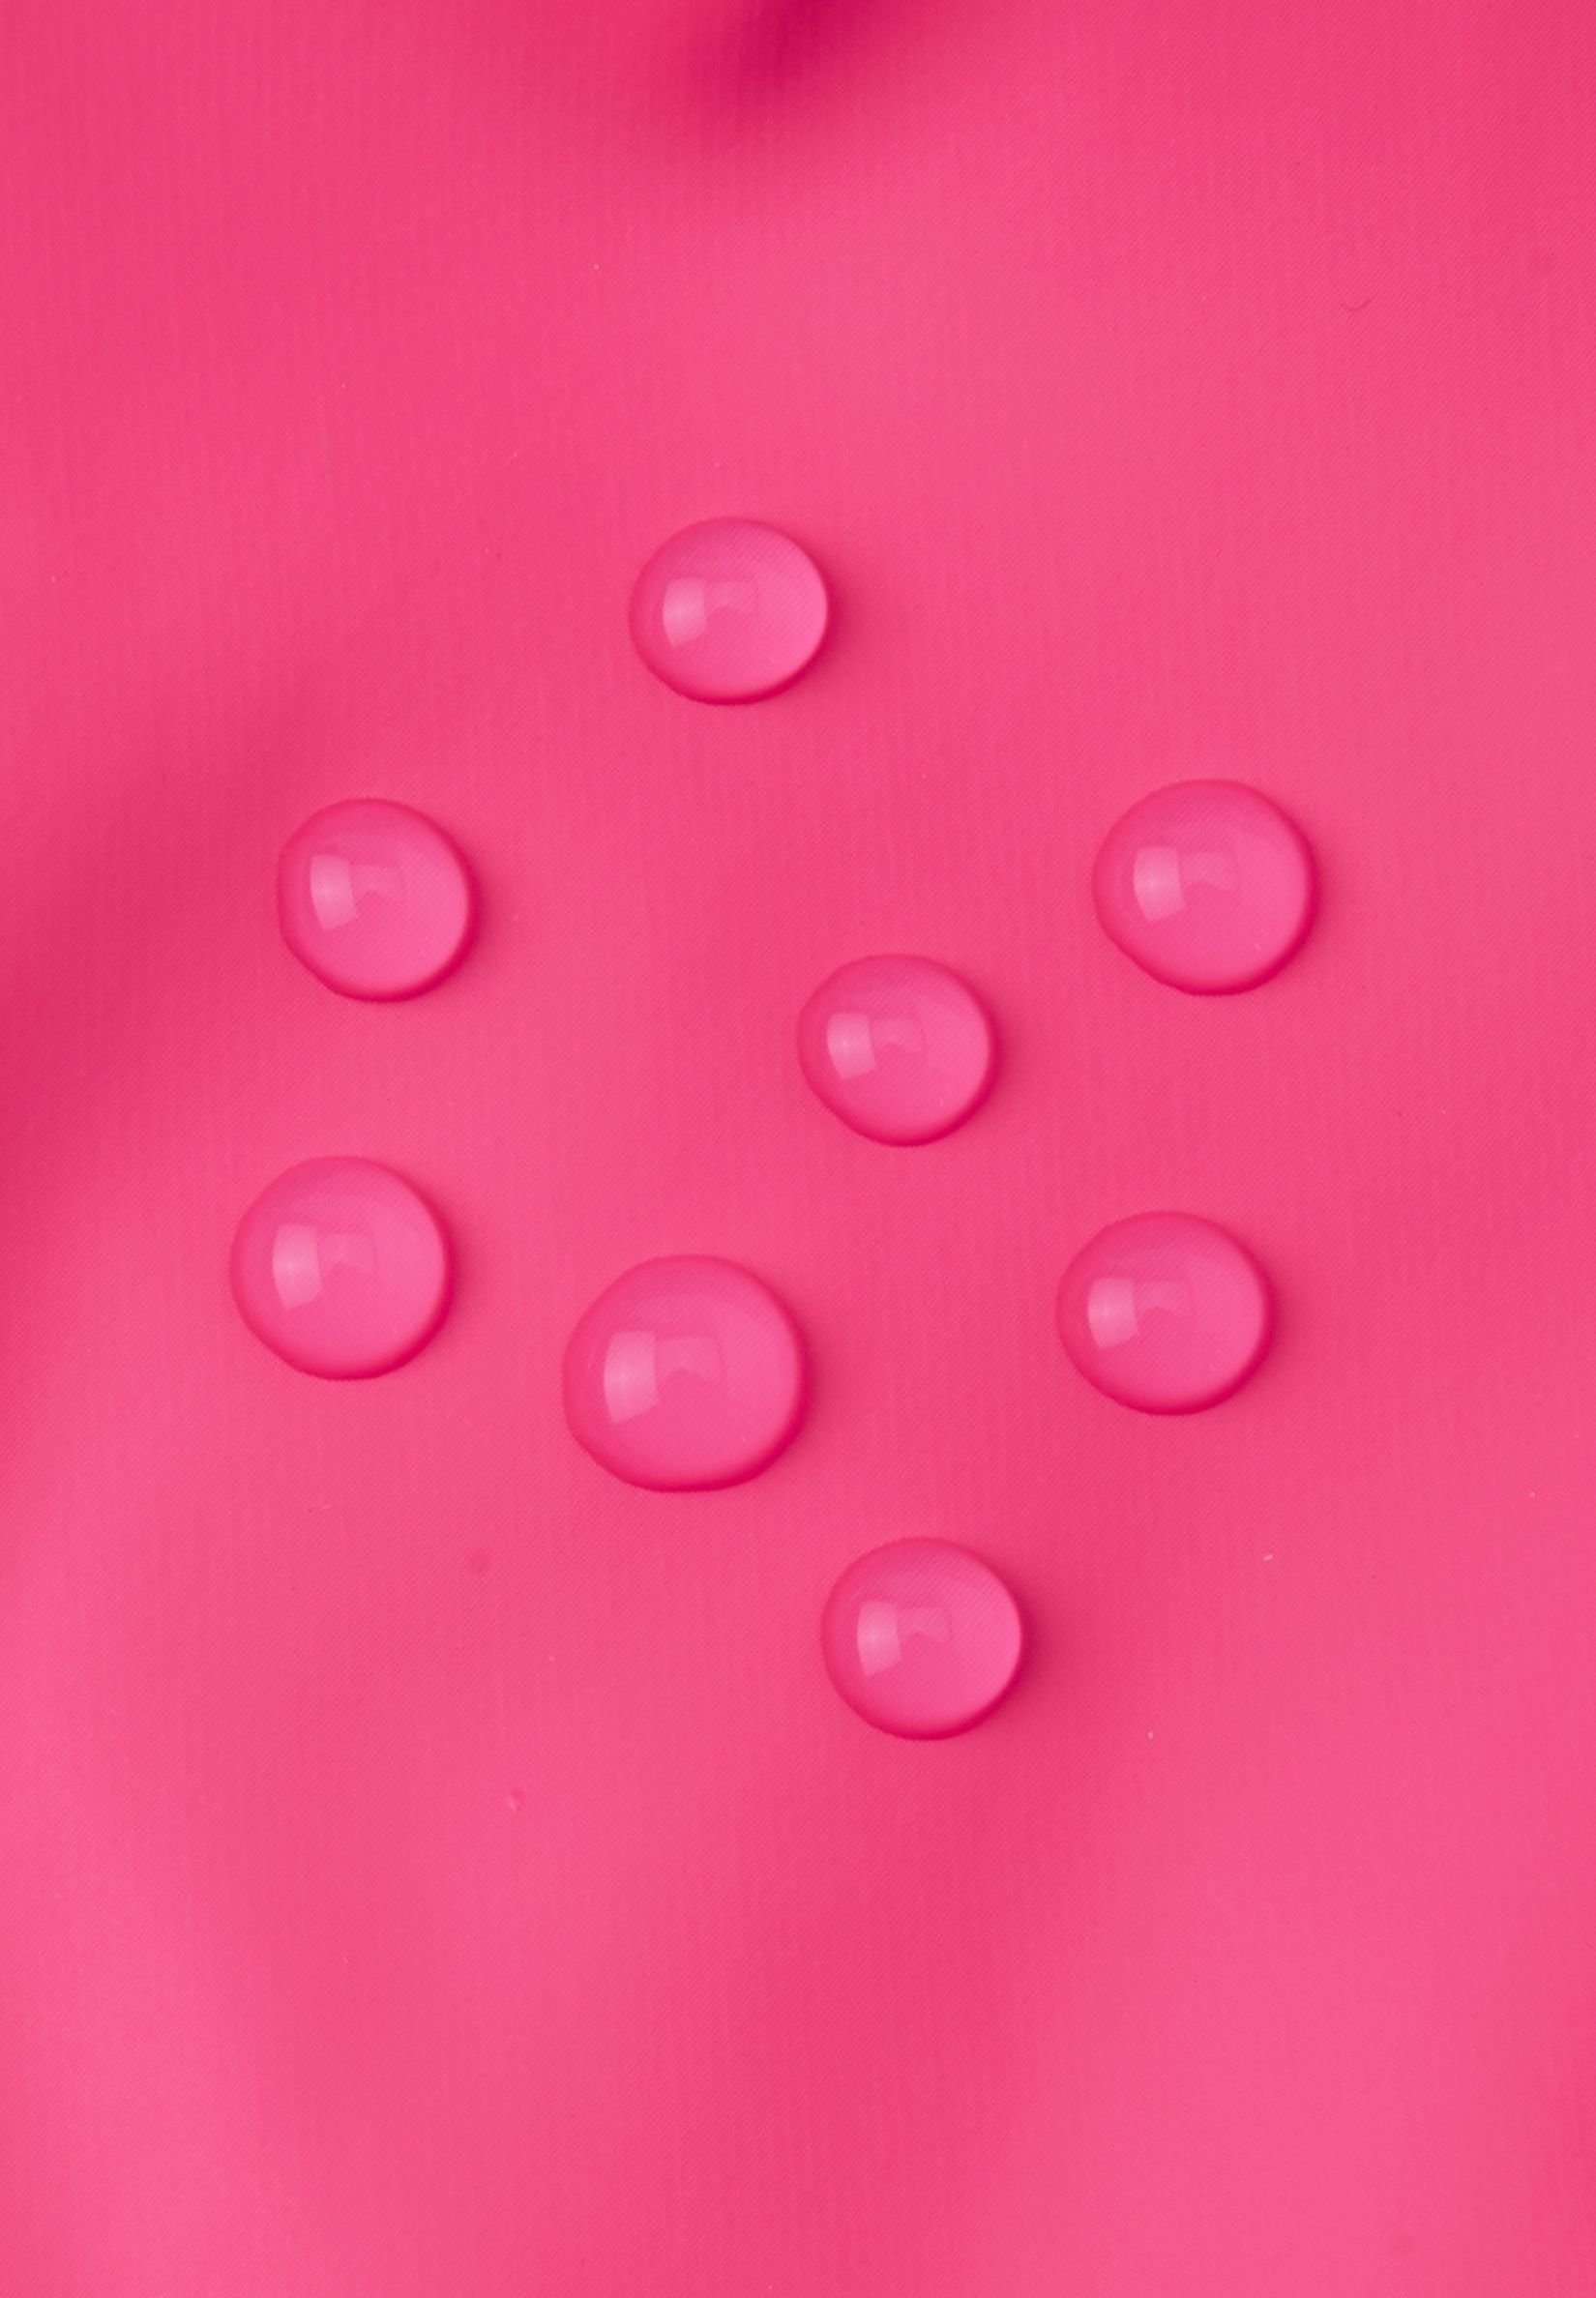 reima Fäustlinge Puro alle wasserdicht pink Nähte reflektierende Candy versiegelt, Details